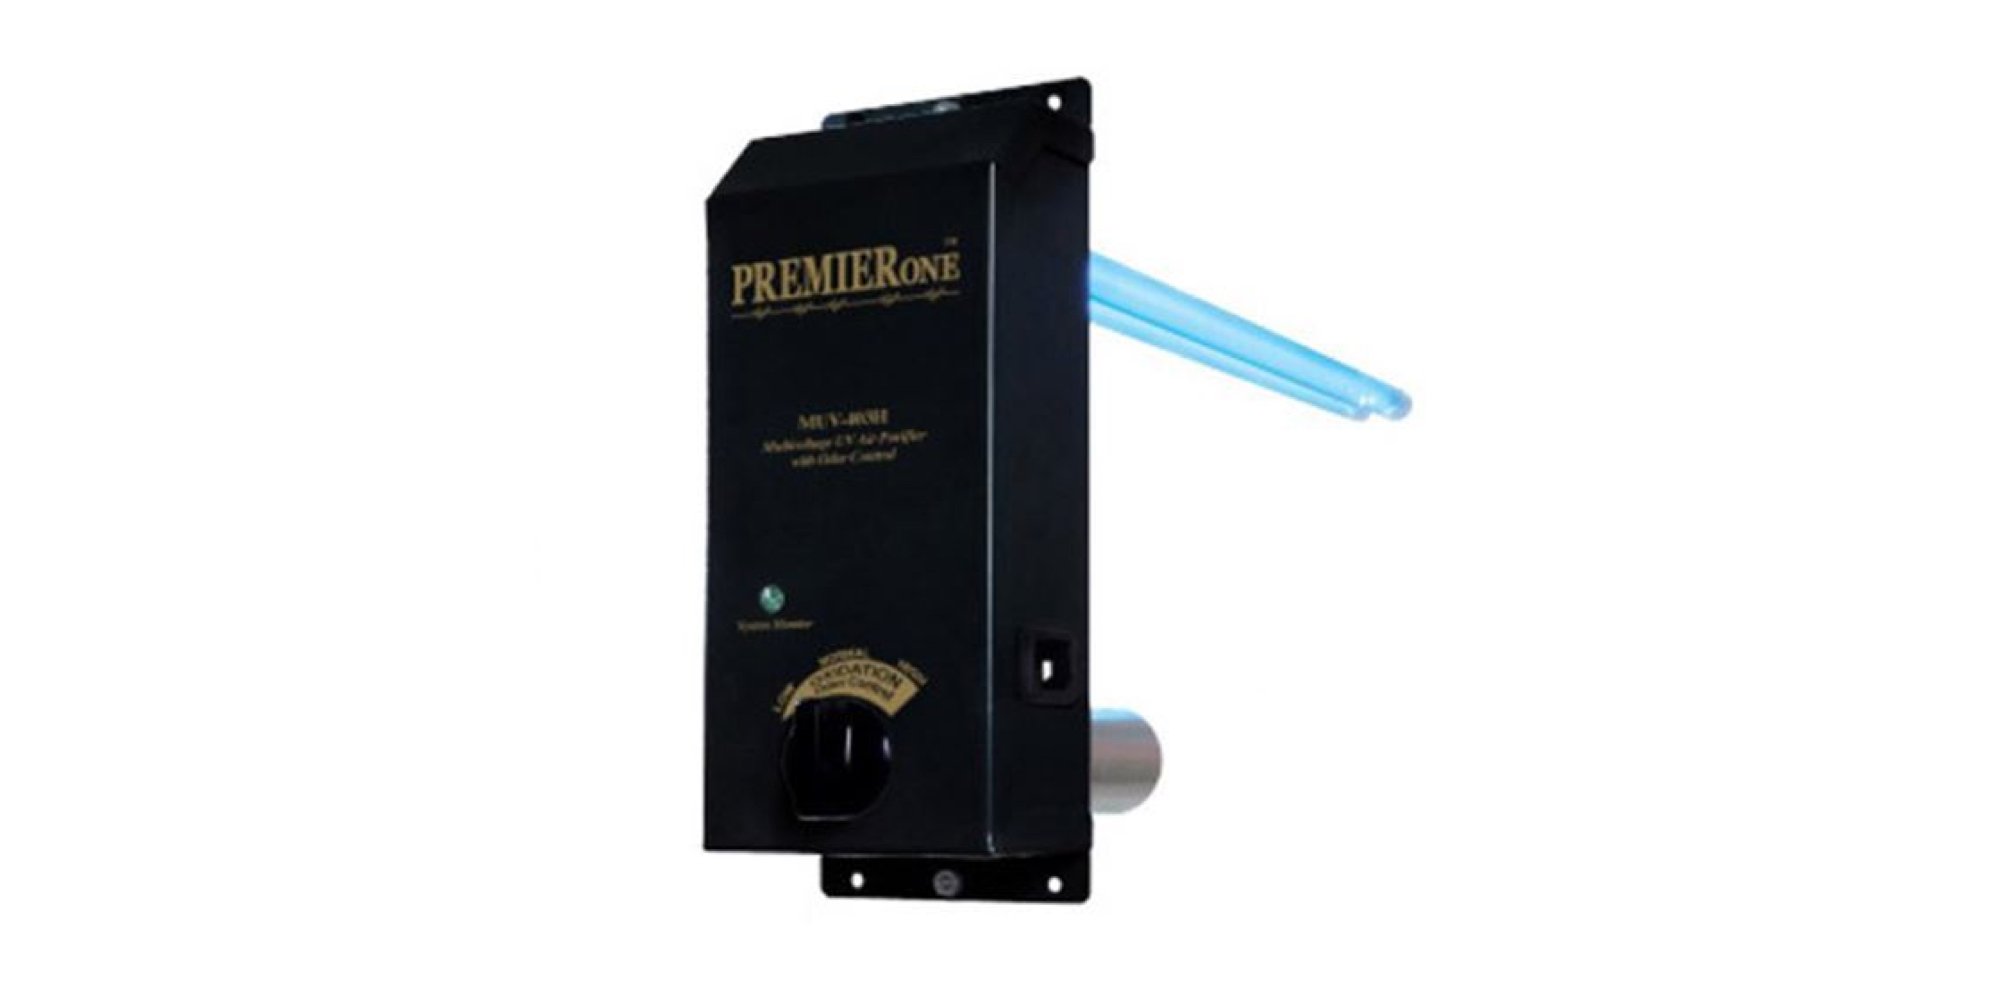 PremierOne black air purifier